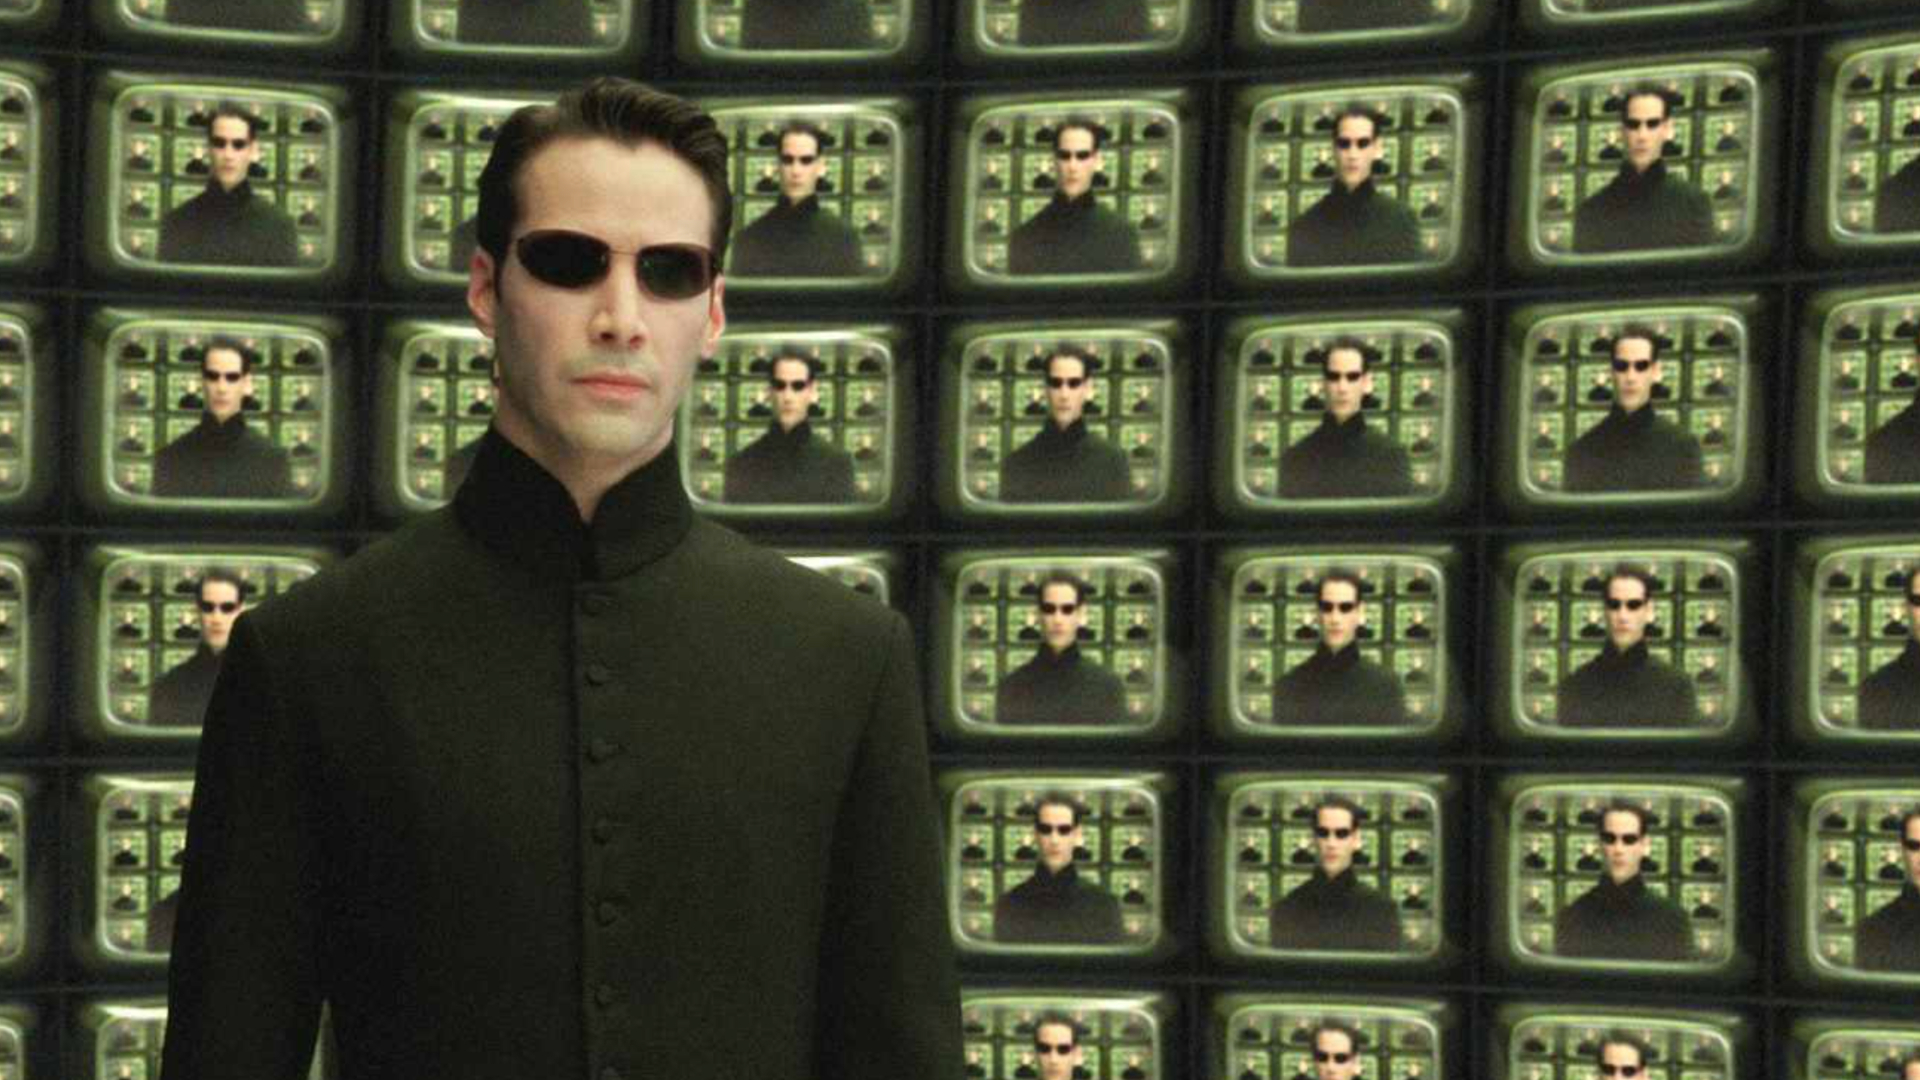 Kadras iš The Matric Reloaded (2003).  Neo (šiurkštūs plaukai, juodi akiniai nuo saulės ir ilgas juodas trumpas paltas) stovi prieš dešimtis televizorių ekranų, visi jį demonstruoja.